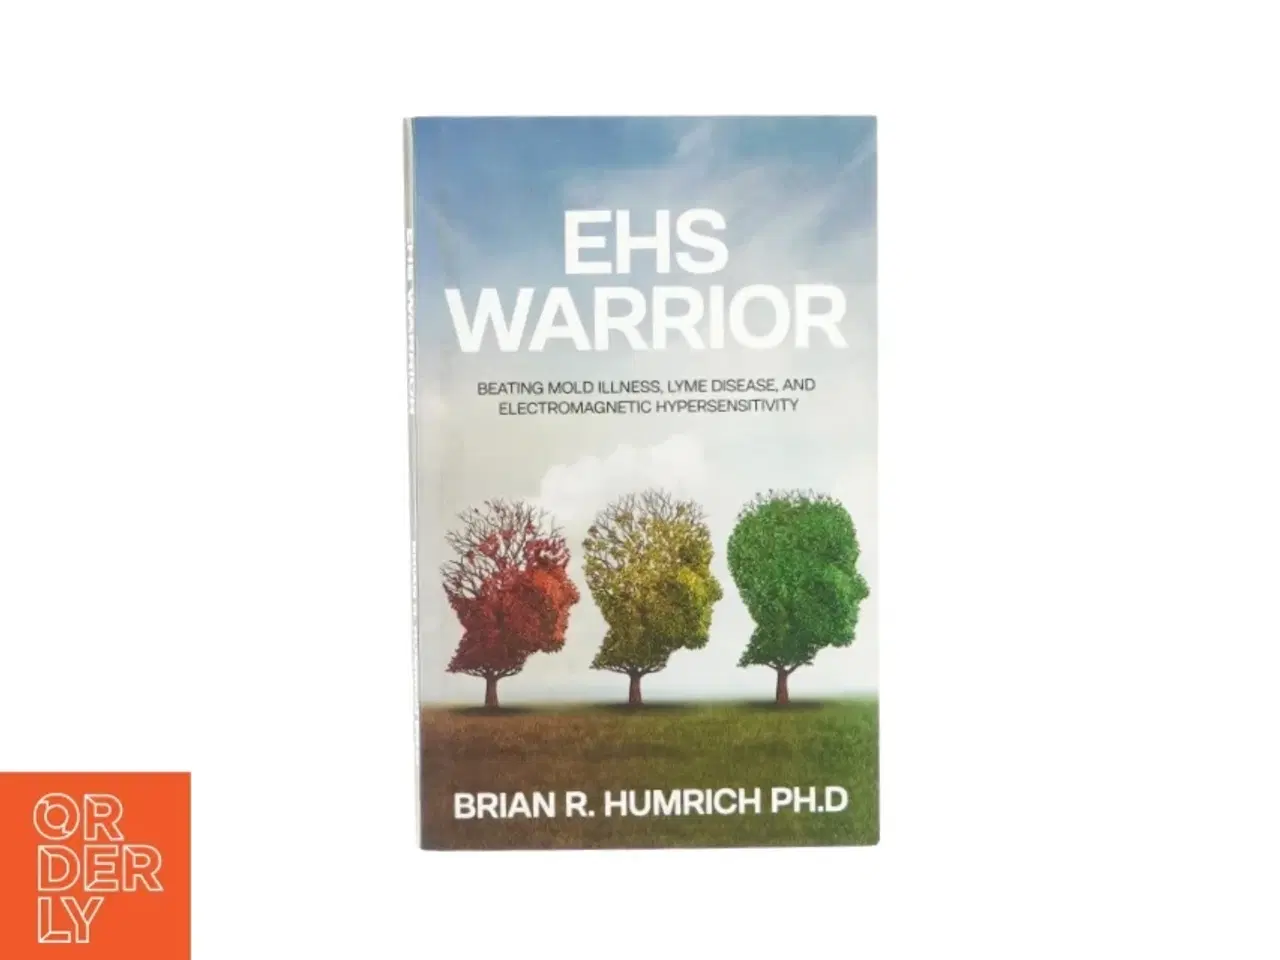 Billede 1 - Ehs warrior af Brian R. Humrich ph.d (bog)